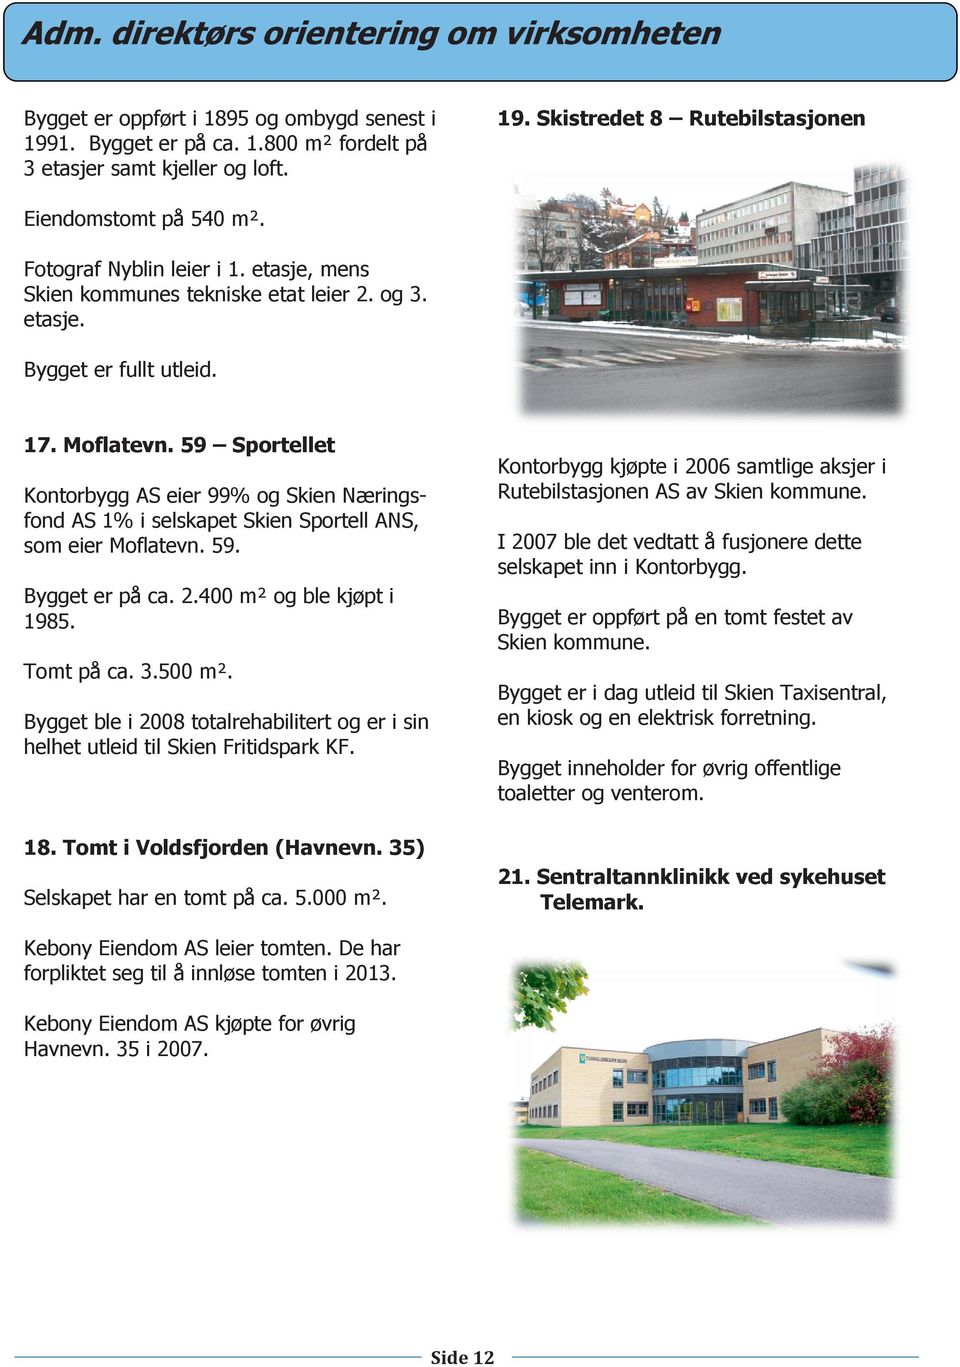 59 Sportellet Kontorbygg AS eier 99% og Skien Næringsfond AS 1% i selskapet Skien Sportell ANS, som eier Moflatevn. 59. Bygget er på ca. 2.400 m² og ble kjøpt i 1985. Tomt på ca. 3.500 m².